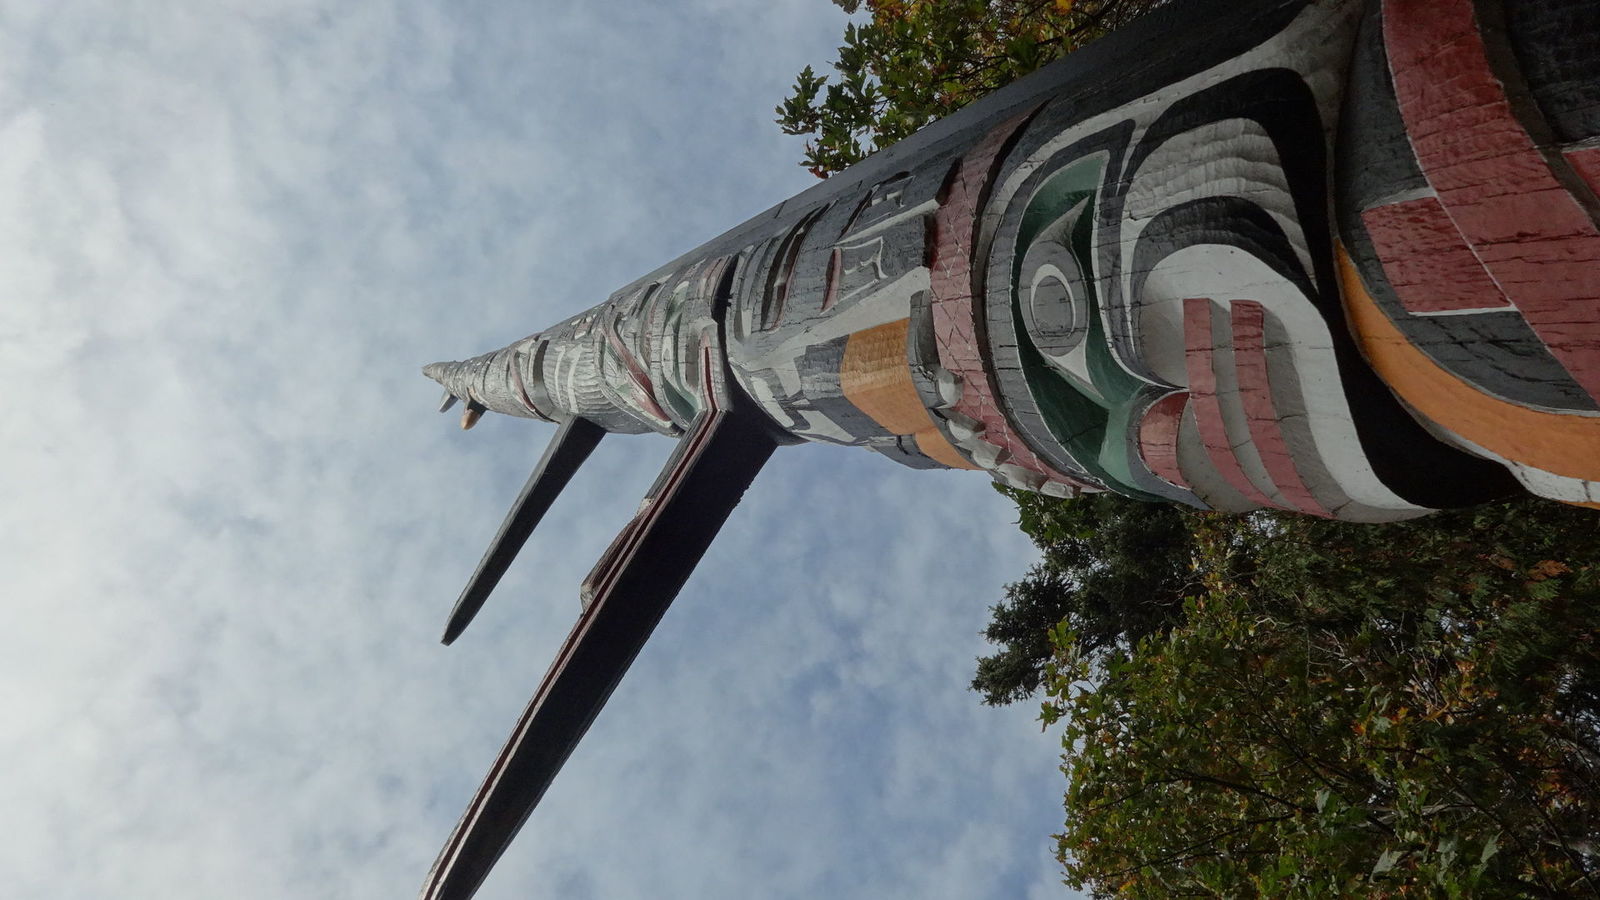 Plus grand totem au monde (38,8 m)